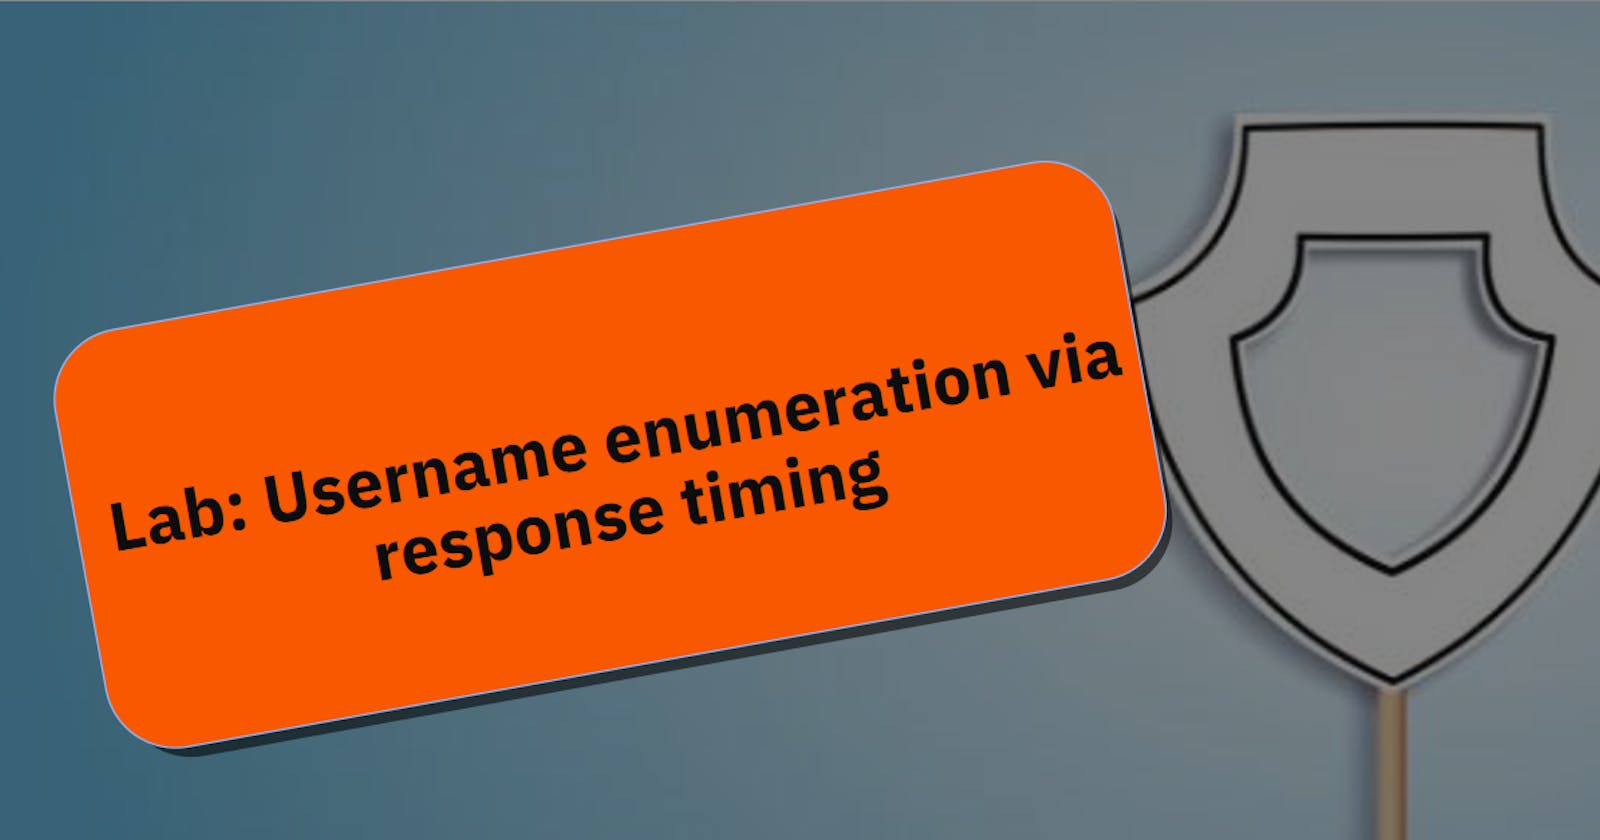 Lab: Username enumeration via response timing